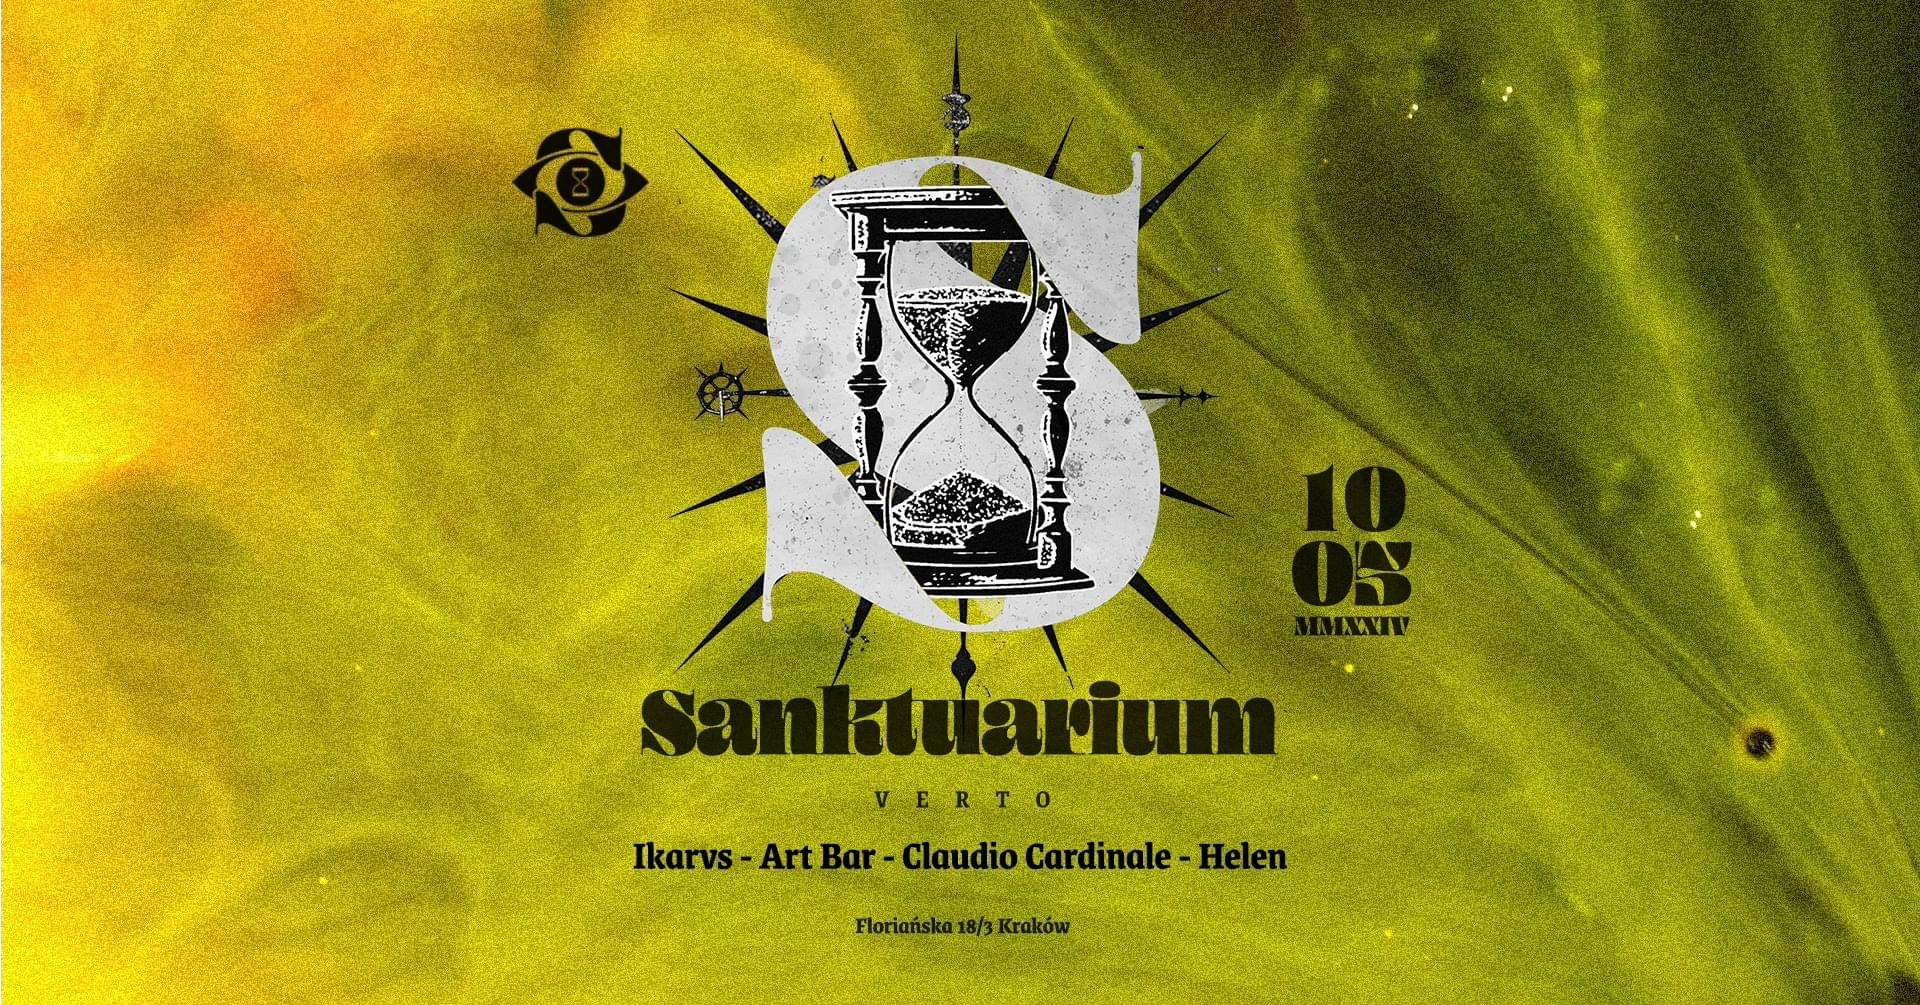 Sanktuarium - Verto - Página frontal